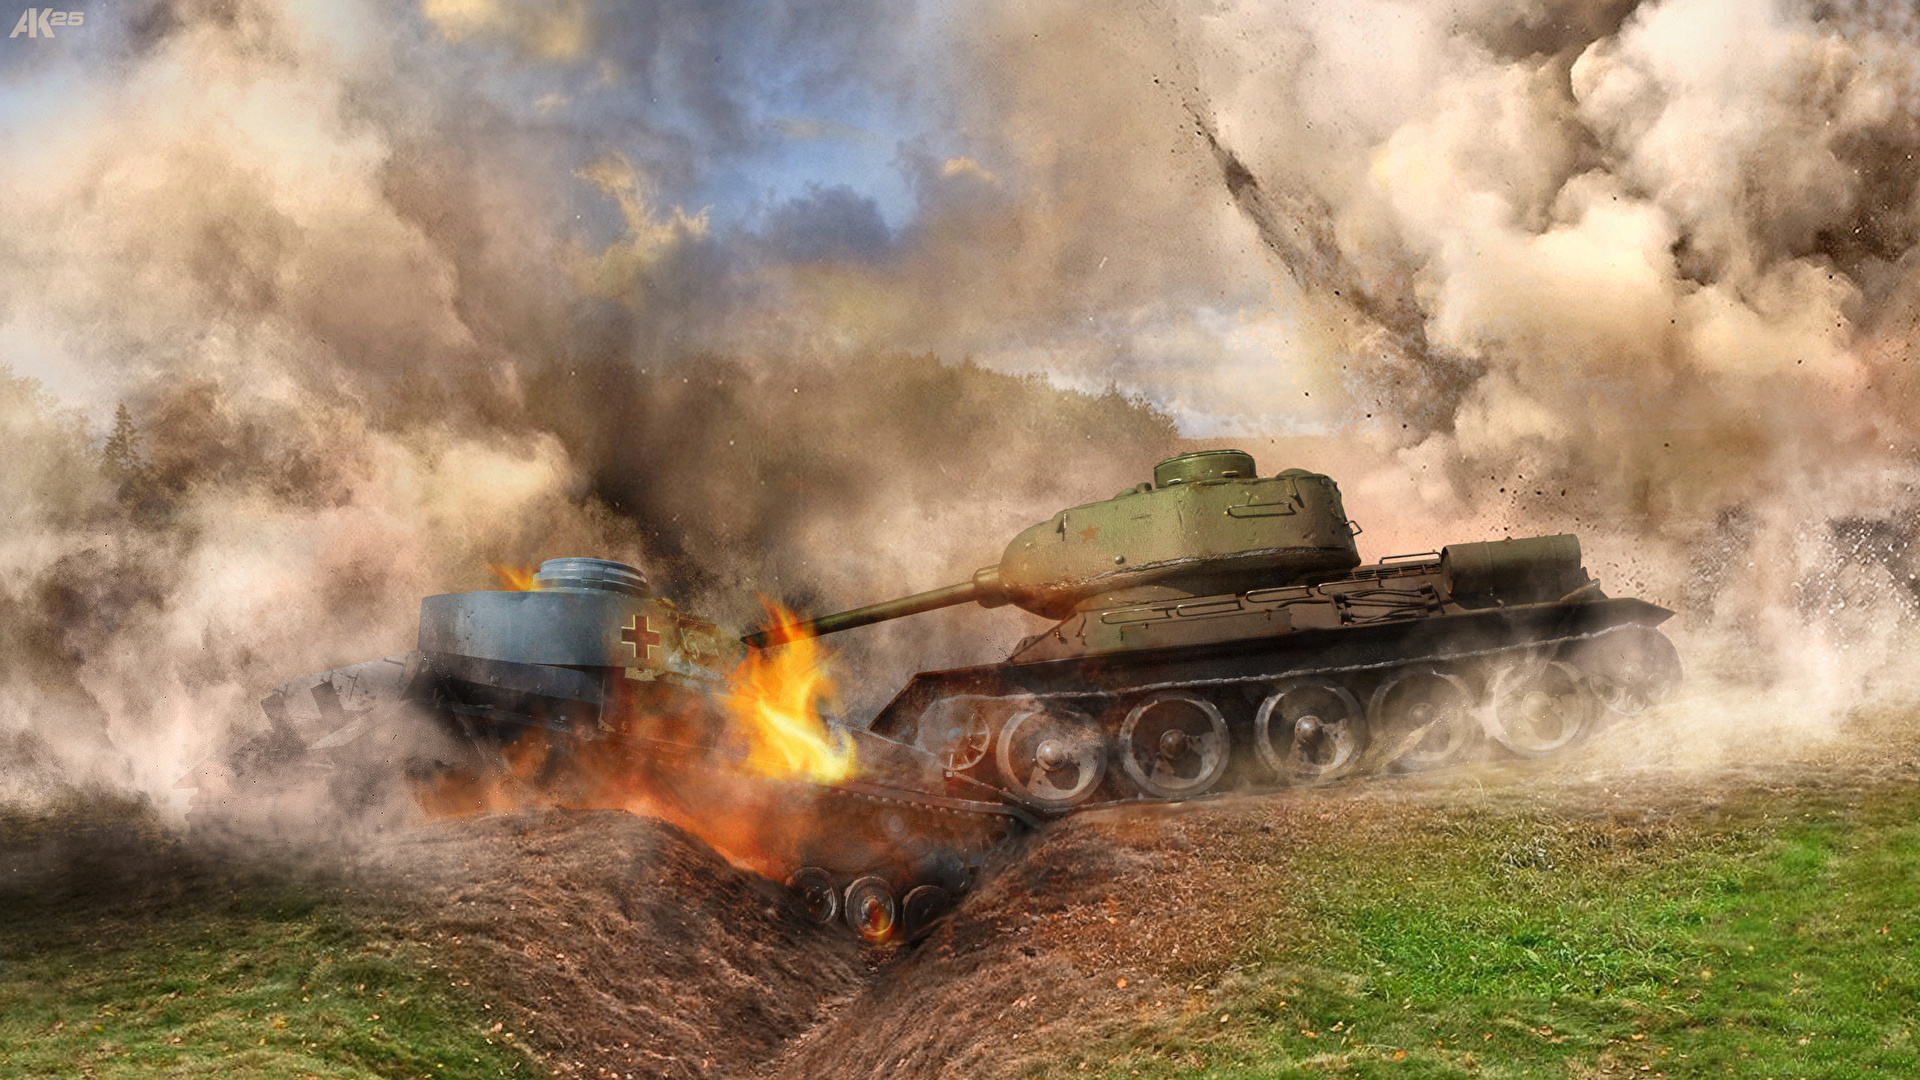 壁紙 19x1080 戦車 爆発 煙 陸軍 ダウンロード 写真